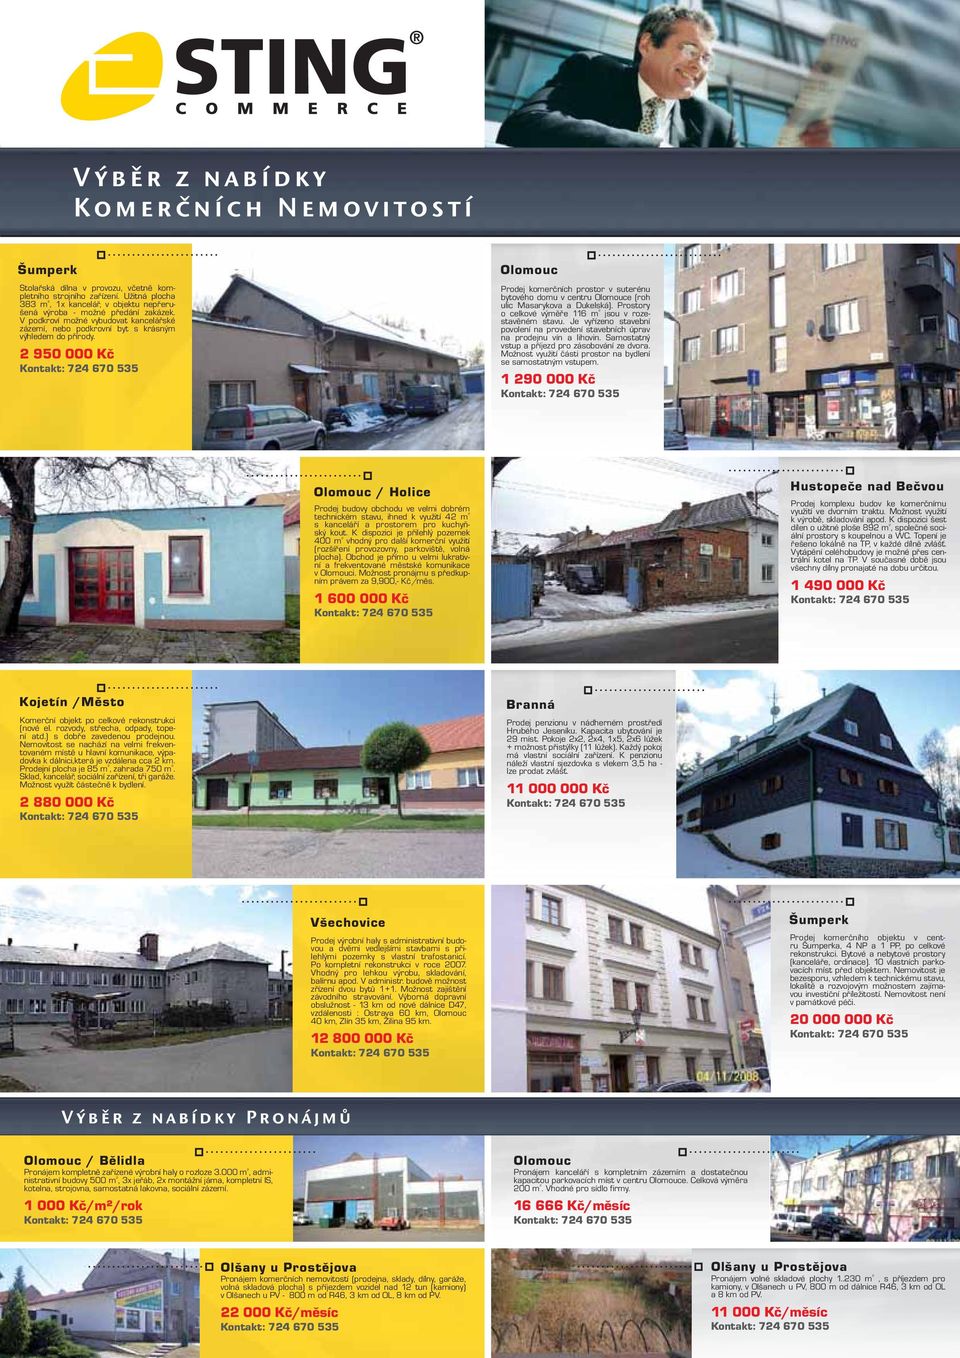 2 950 000 Kč Olomouc Prodej komerčních prostor v suterénu bytového domu v centru Olomouce (roh ulic Masarykova a Dukelská). Prostory o celkové výměře 116 m ² jsou v rozestavěném stavu.